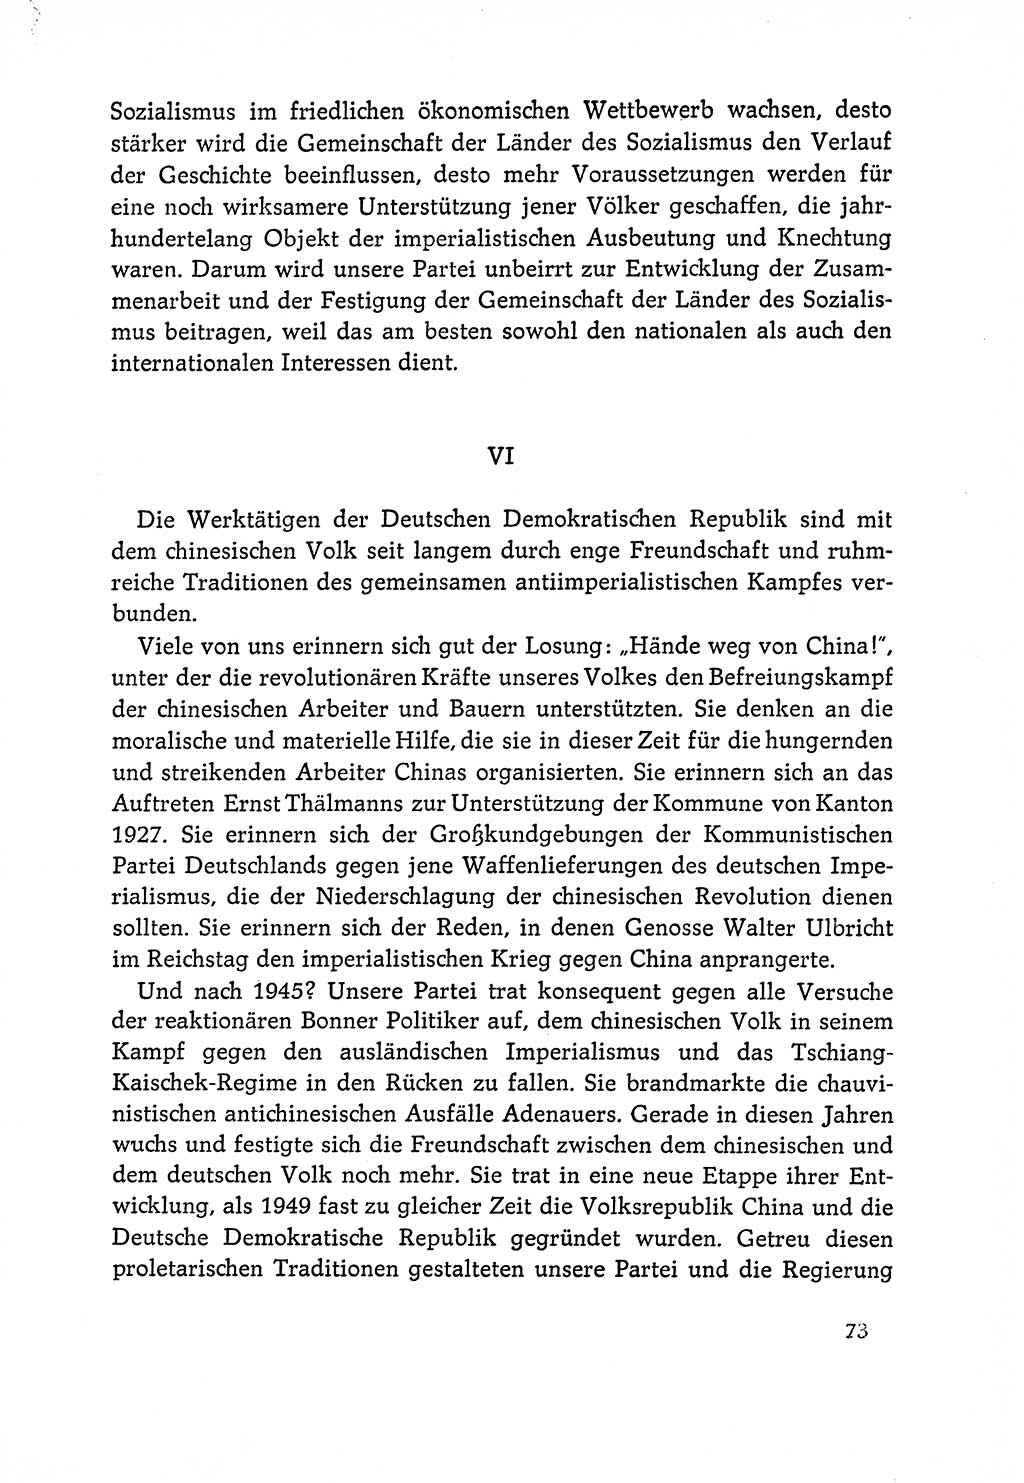 Dokumente der Sozialistischen Einheitspartei Deutschlands (SED) [Deutsche Demokratische Republik (DDR)] 1964-1965, Seite 73 (Dok. SED DDR 1964-1965, S. 73)